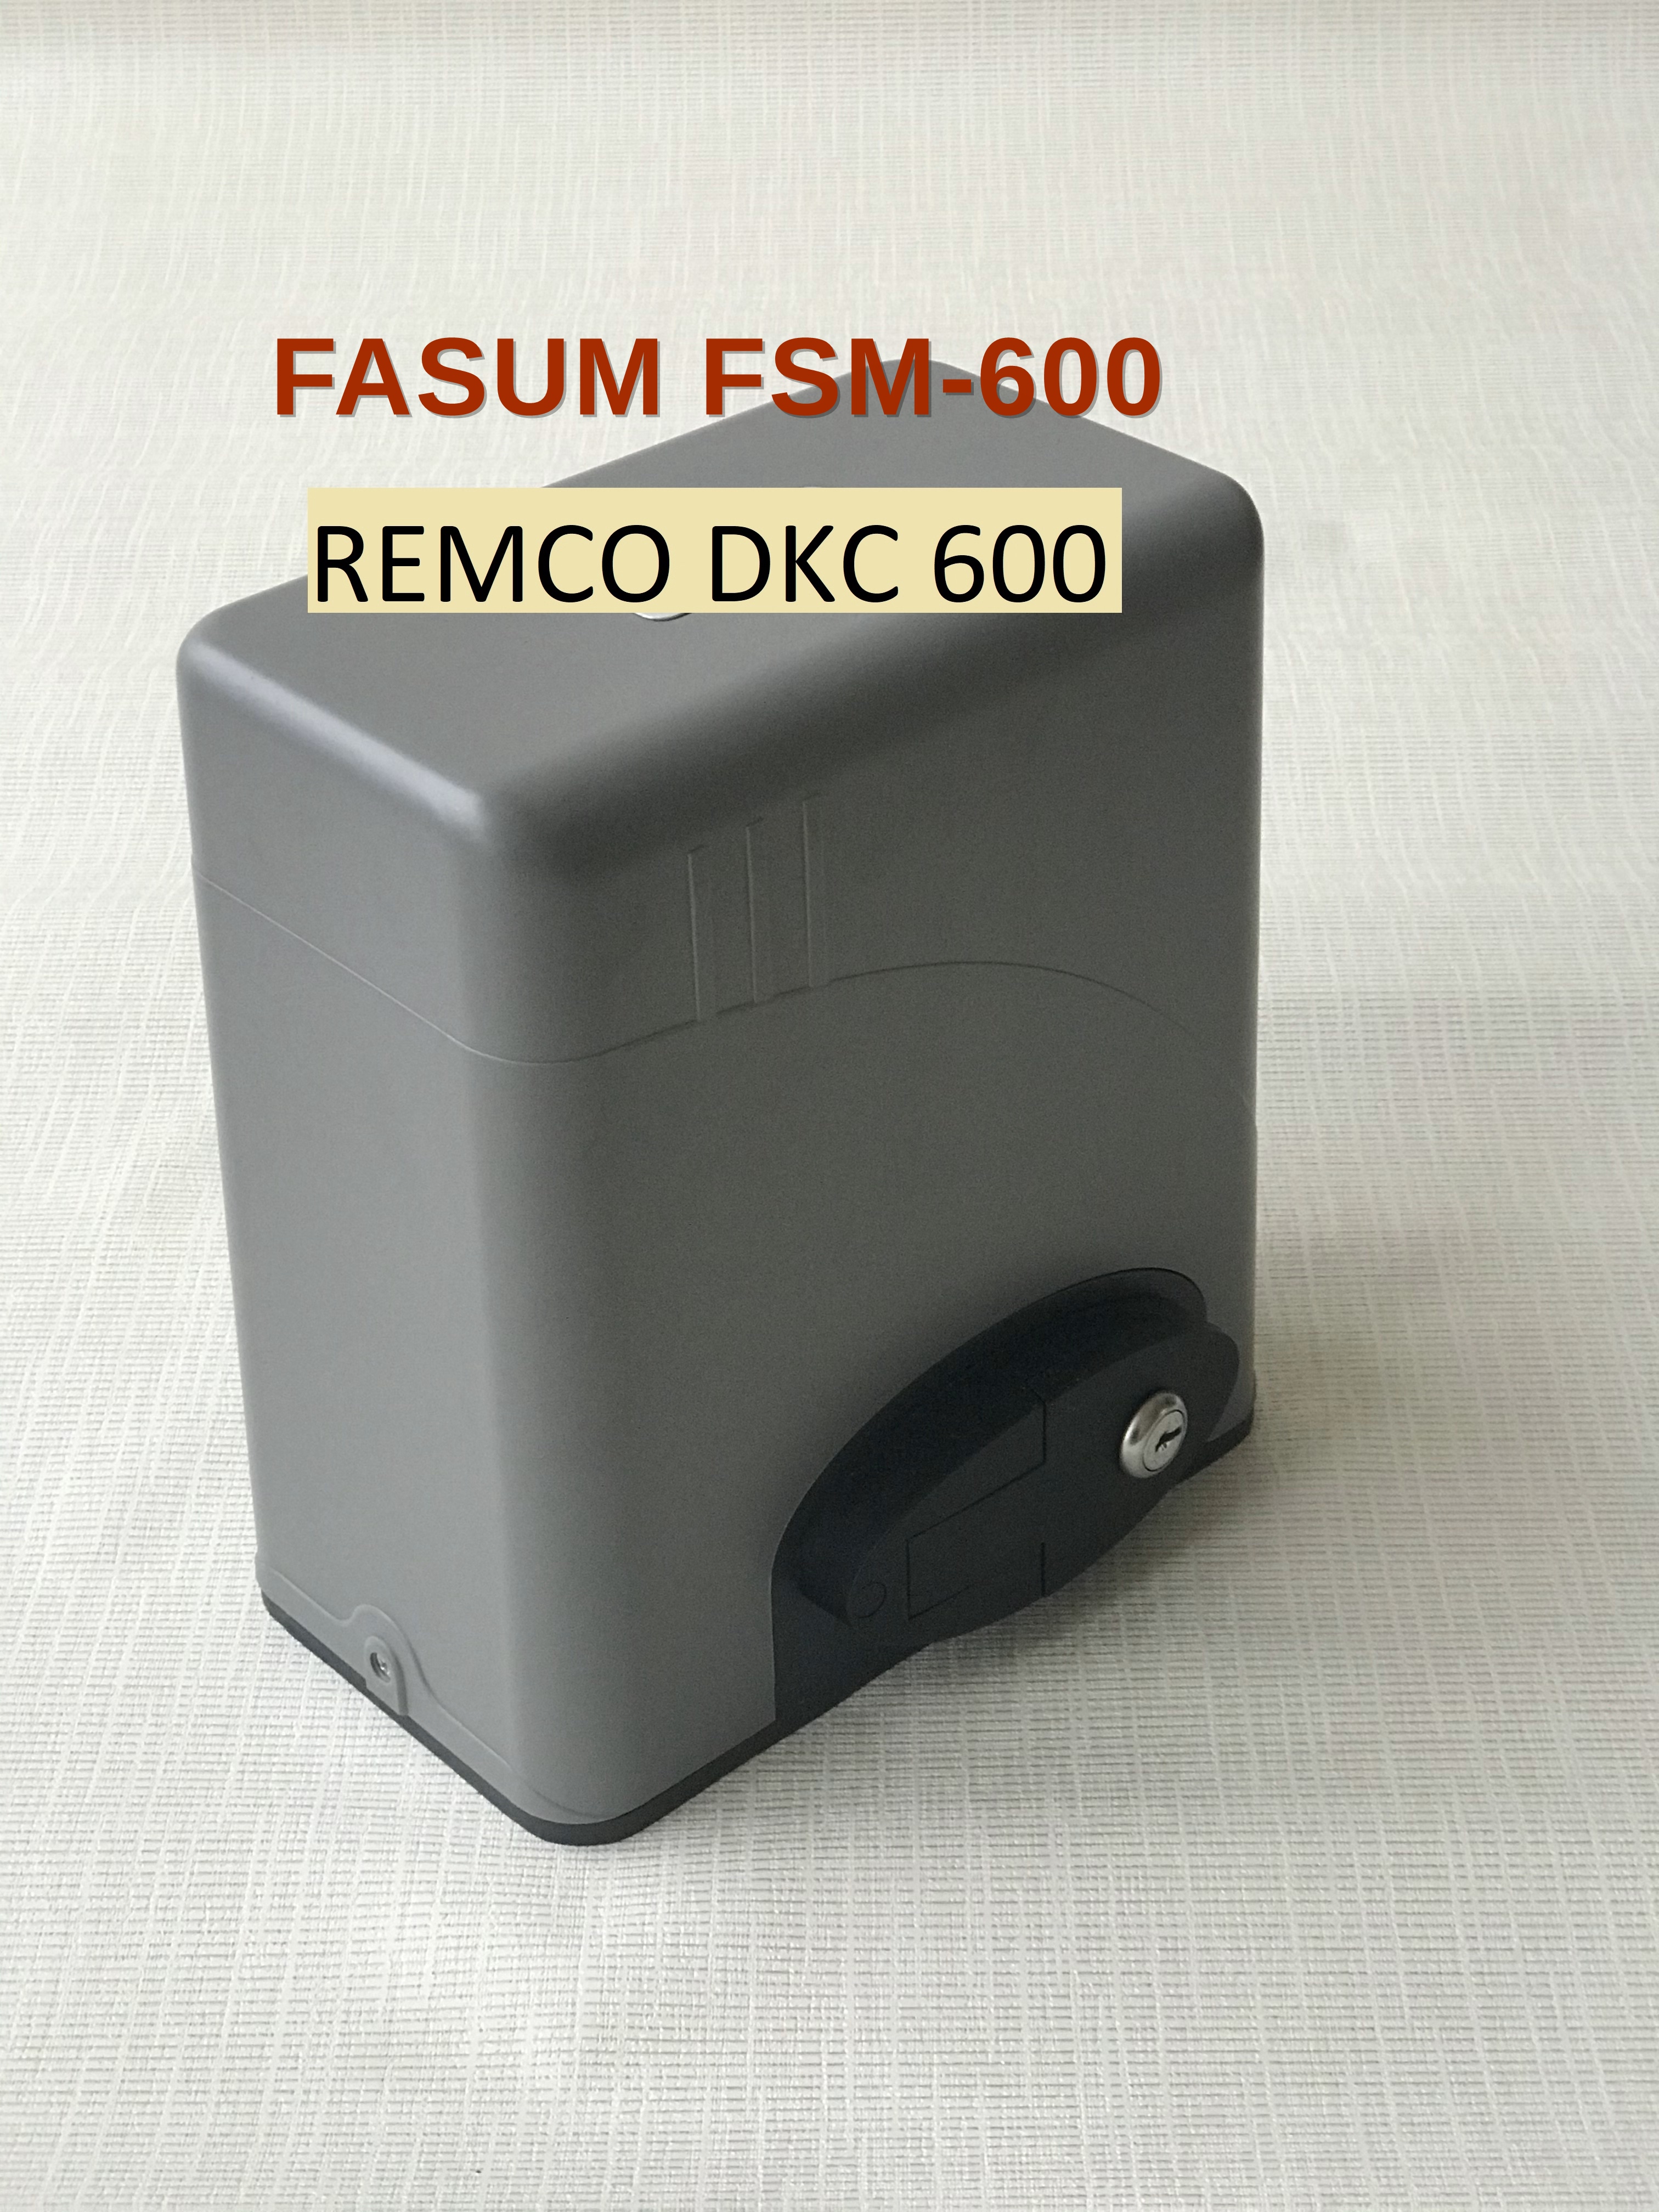  FASUM FSM-600